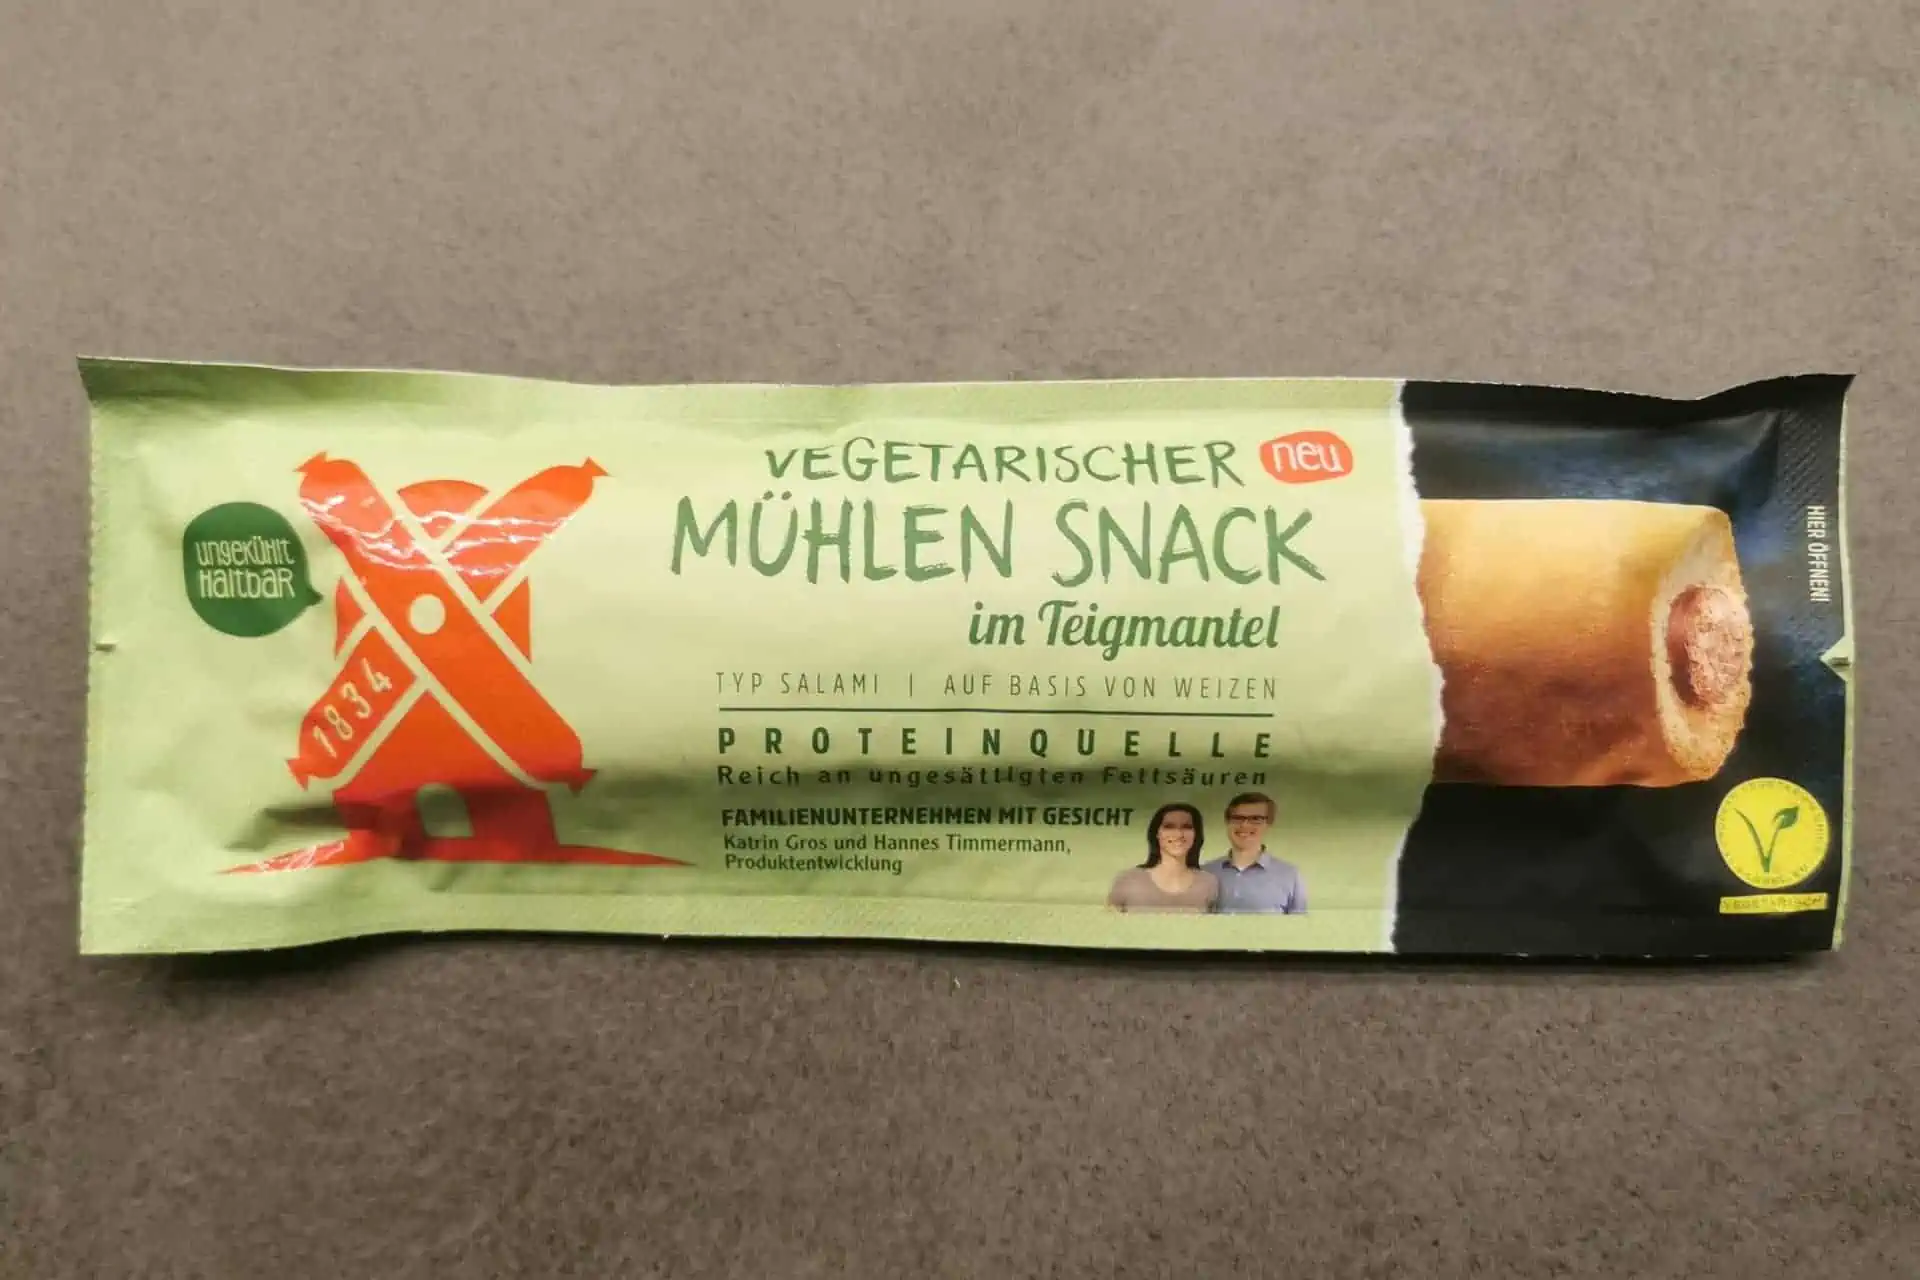 Rügenwalder Mühle: Vegetarischer Mühlen Snack Teigmantel Salami